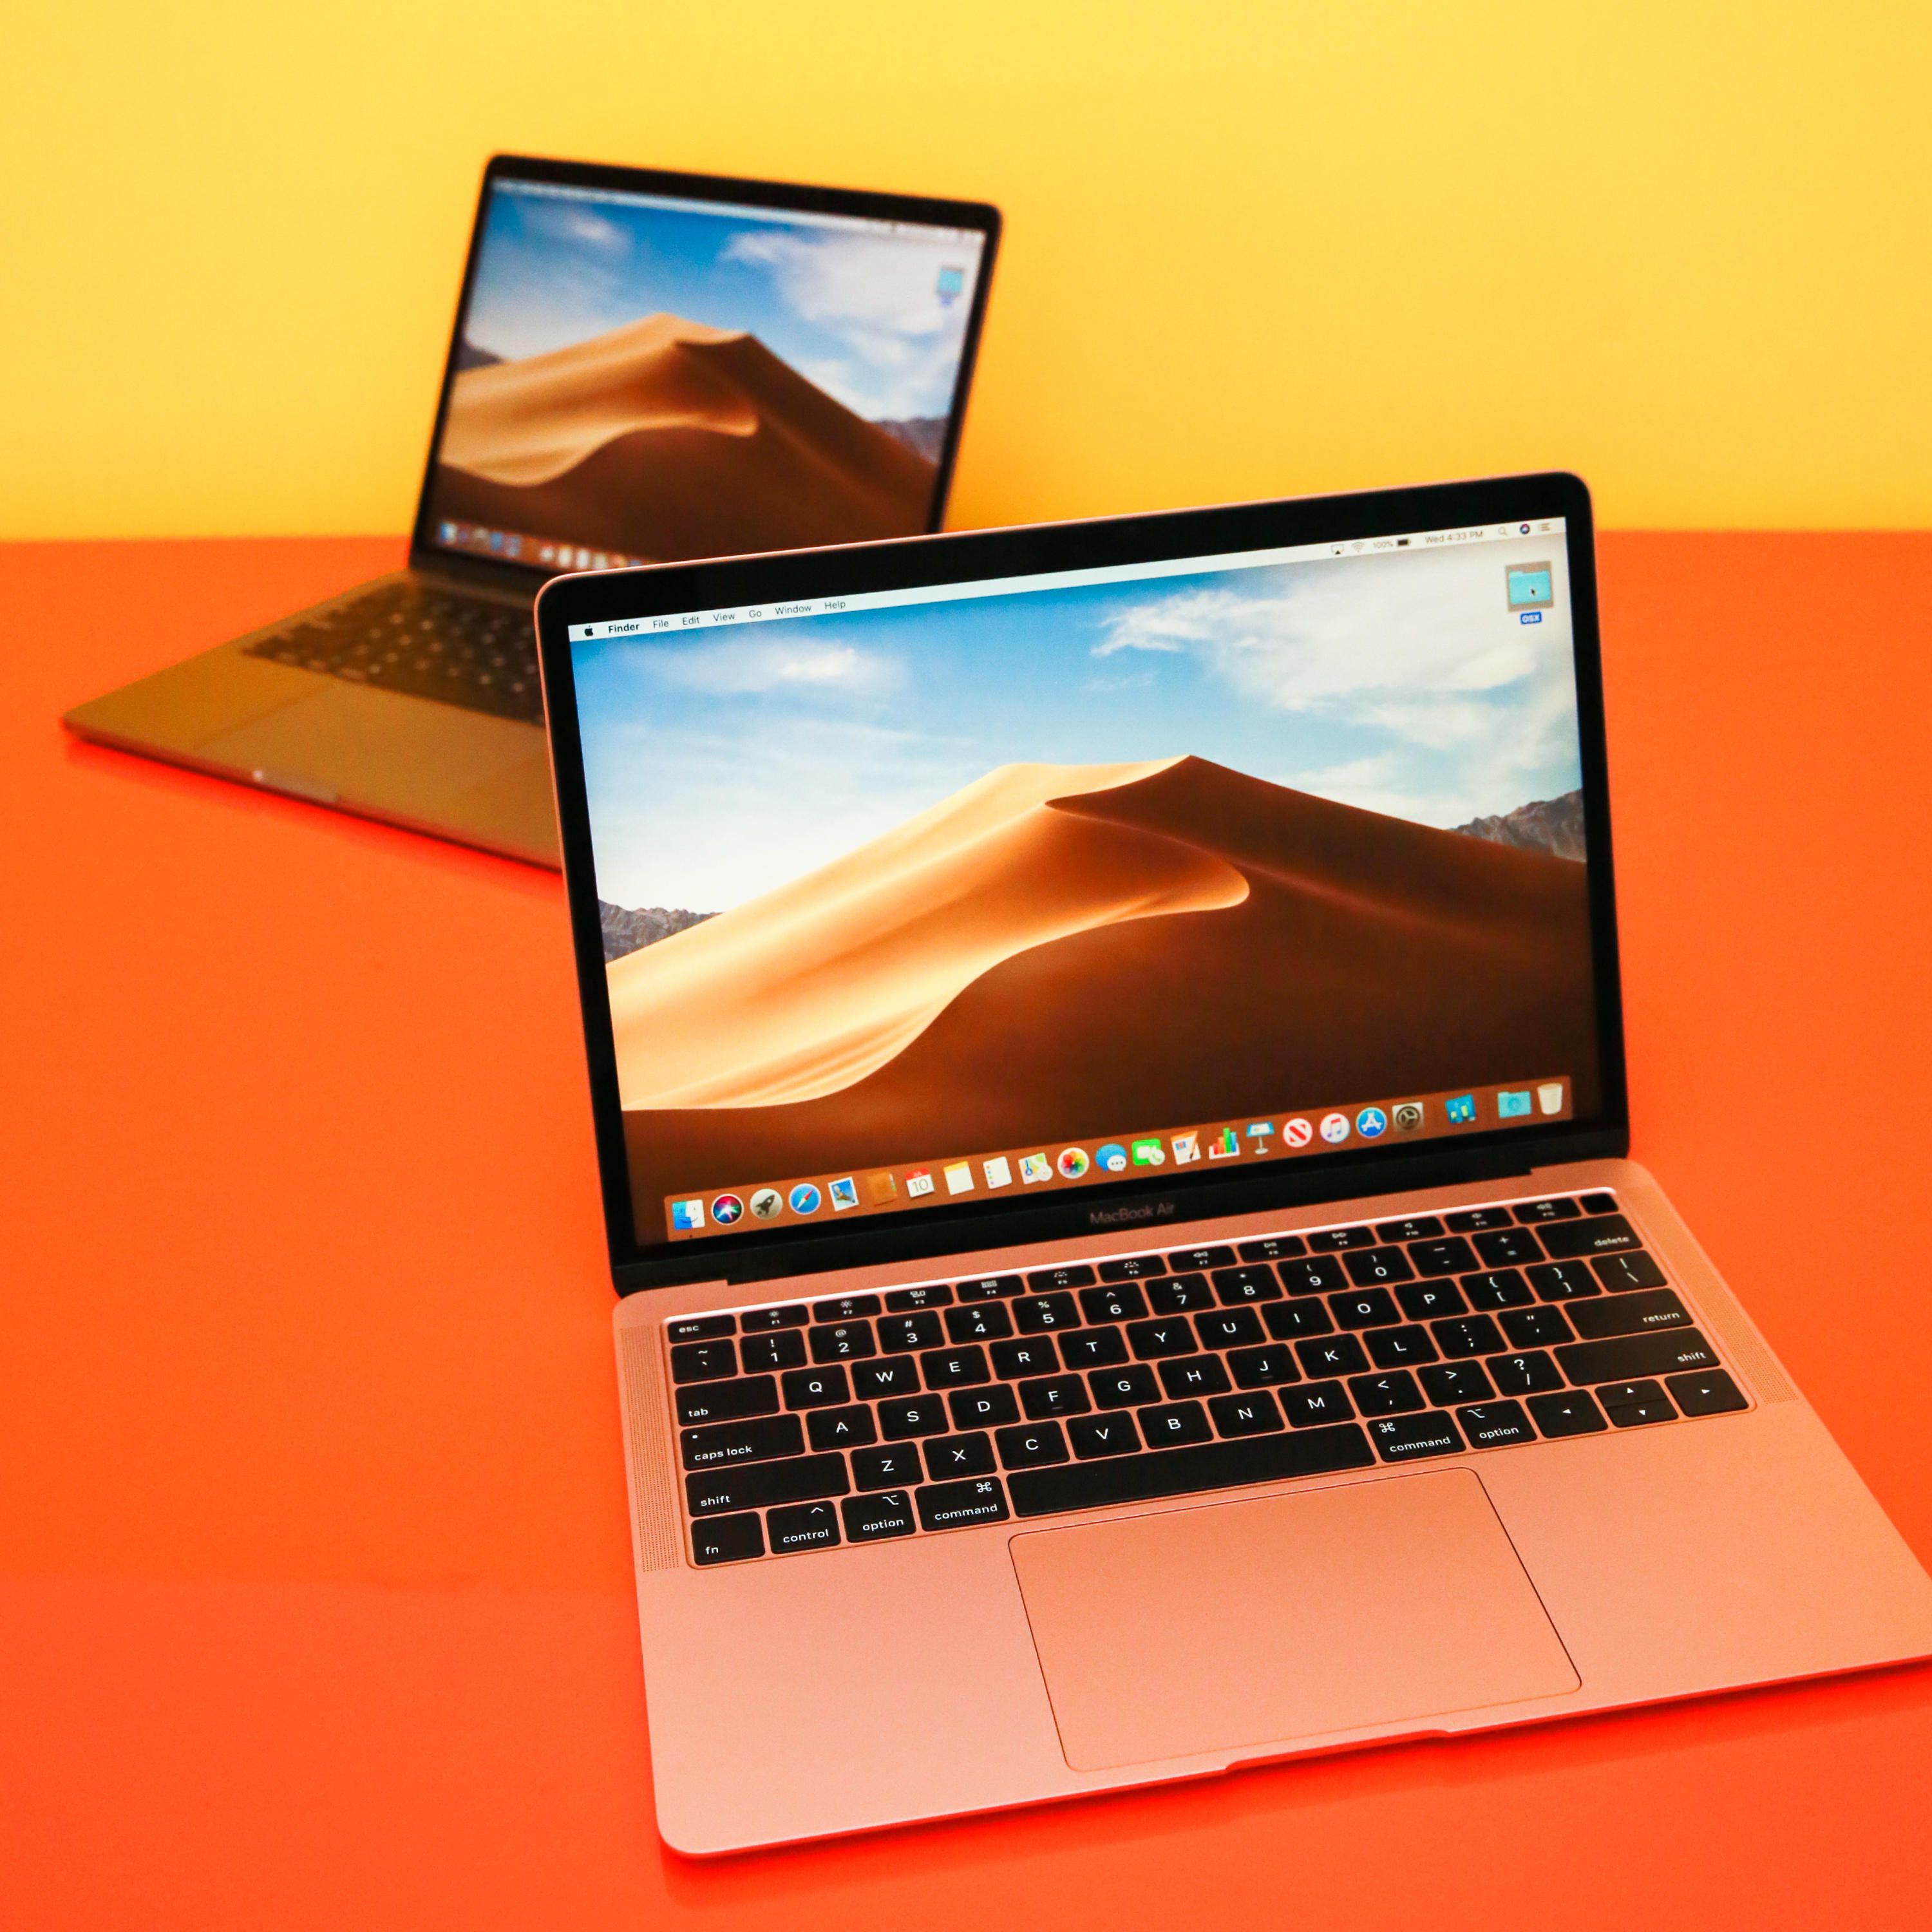 Apple Le MacBook Air, basé sur l'ARM, serait lancé au prix de 799 dollars américains, tandis que